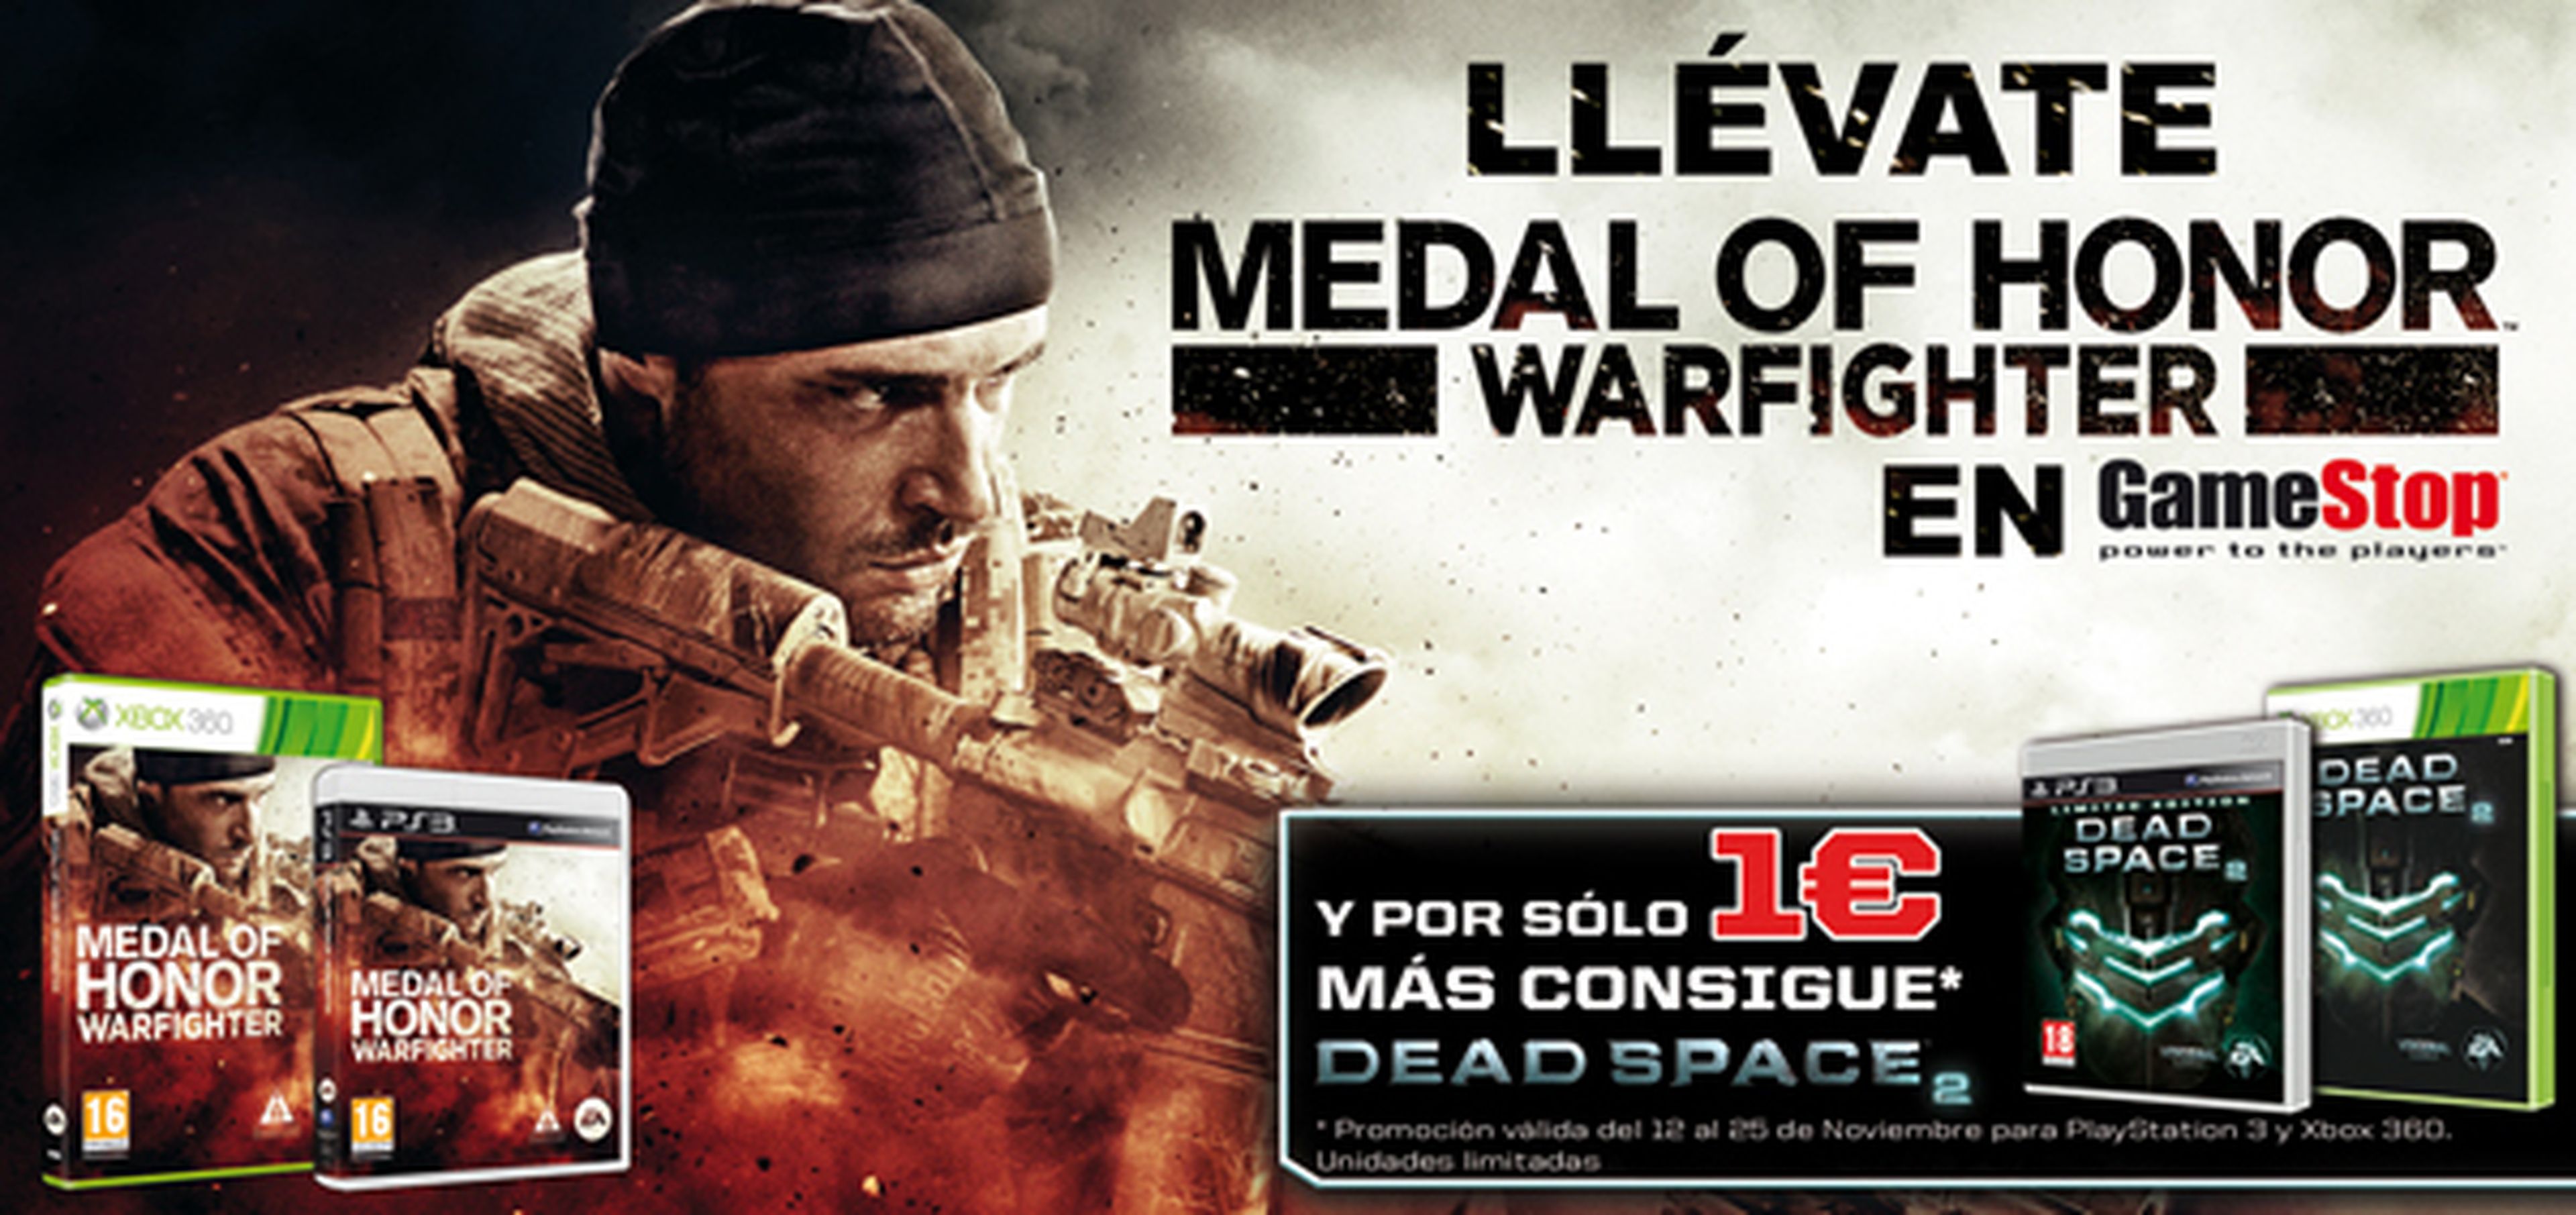 Dead Space 2 a 1 euro con la compra de MoH Warfighter